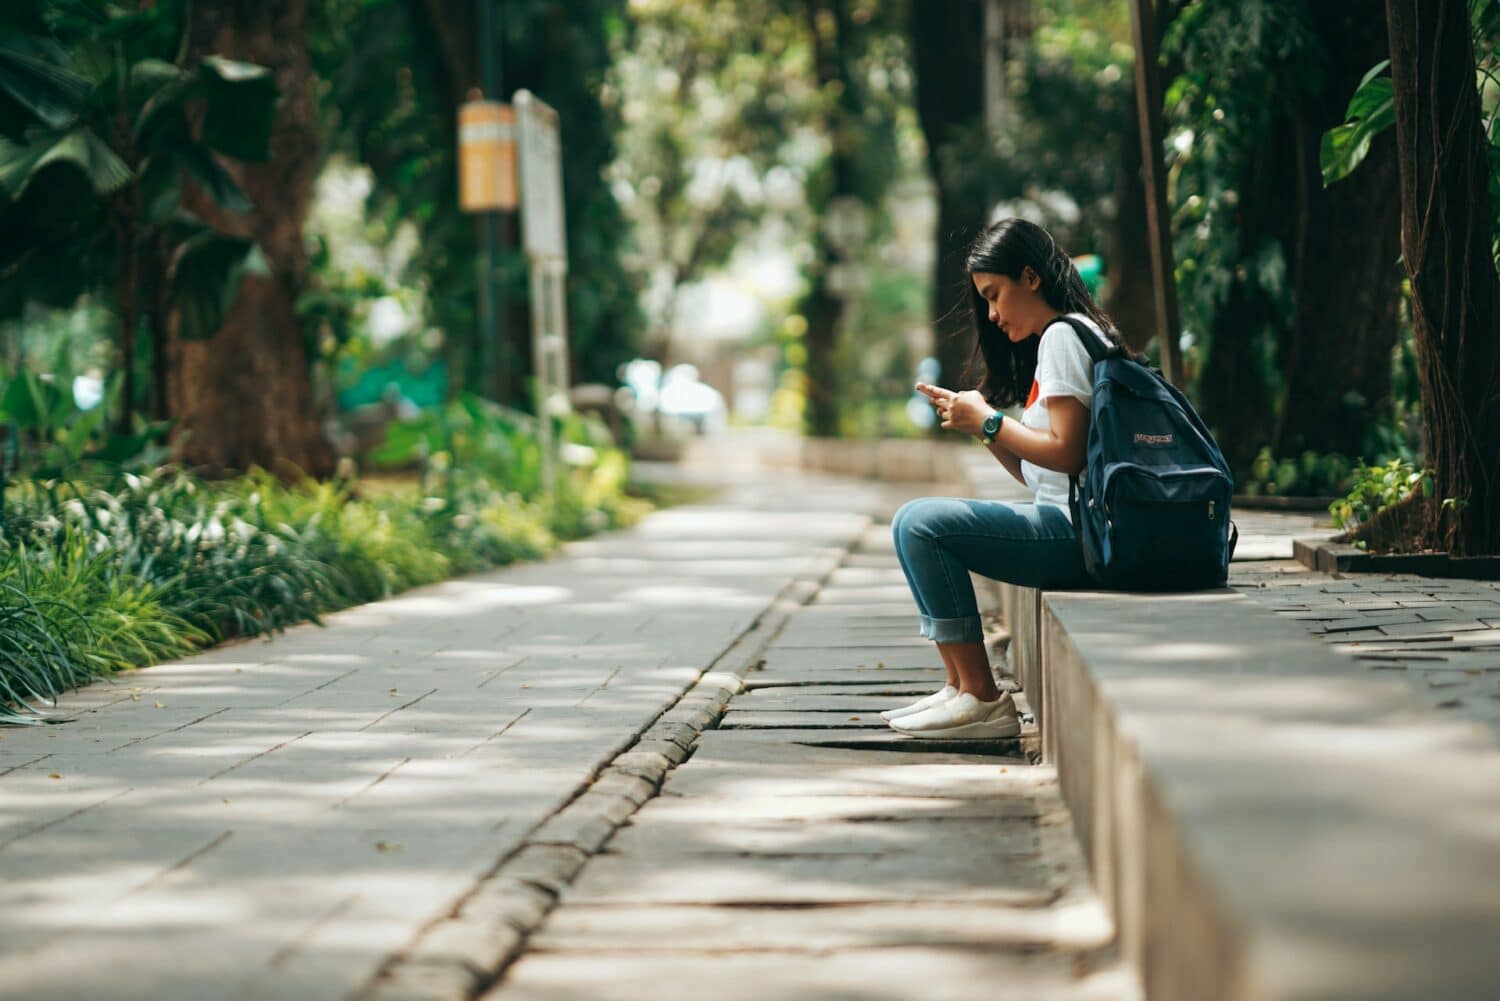 Menina usando calça jeans e blusa branca, com mochila nas costas, sentada e olhando no celular. O lugar é rodeado de vegetação e a imagem é para ilustrar o post de chip celular Indonésia